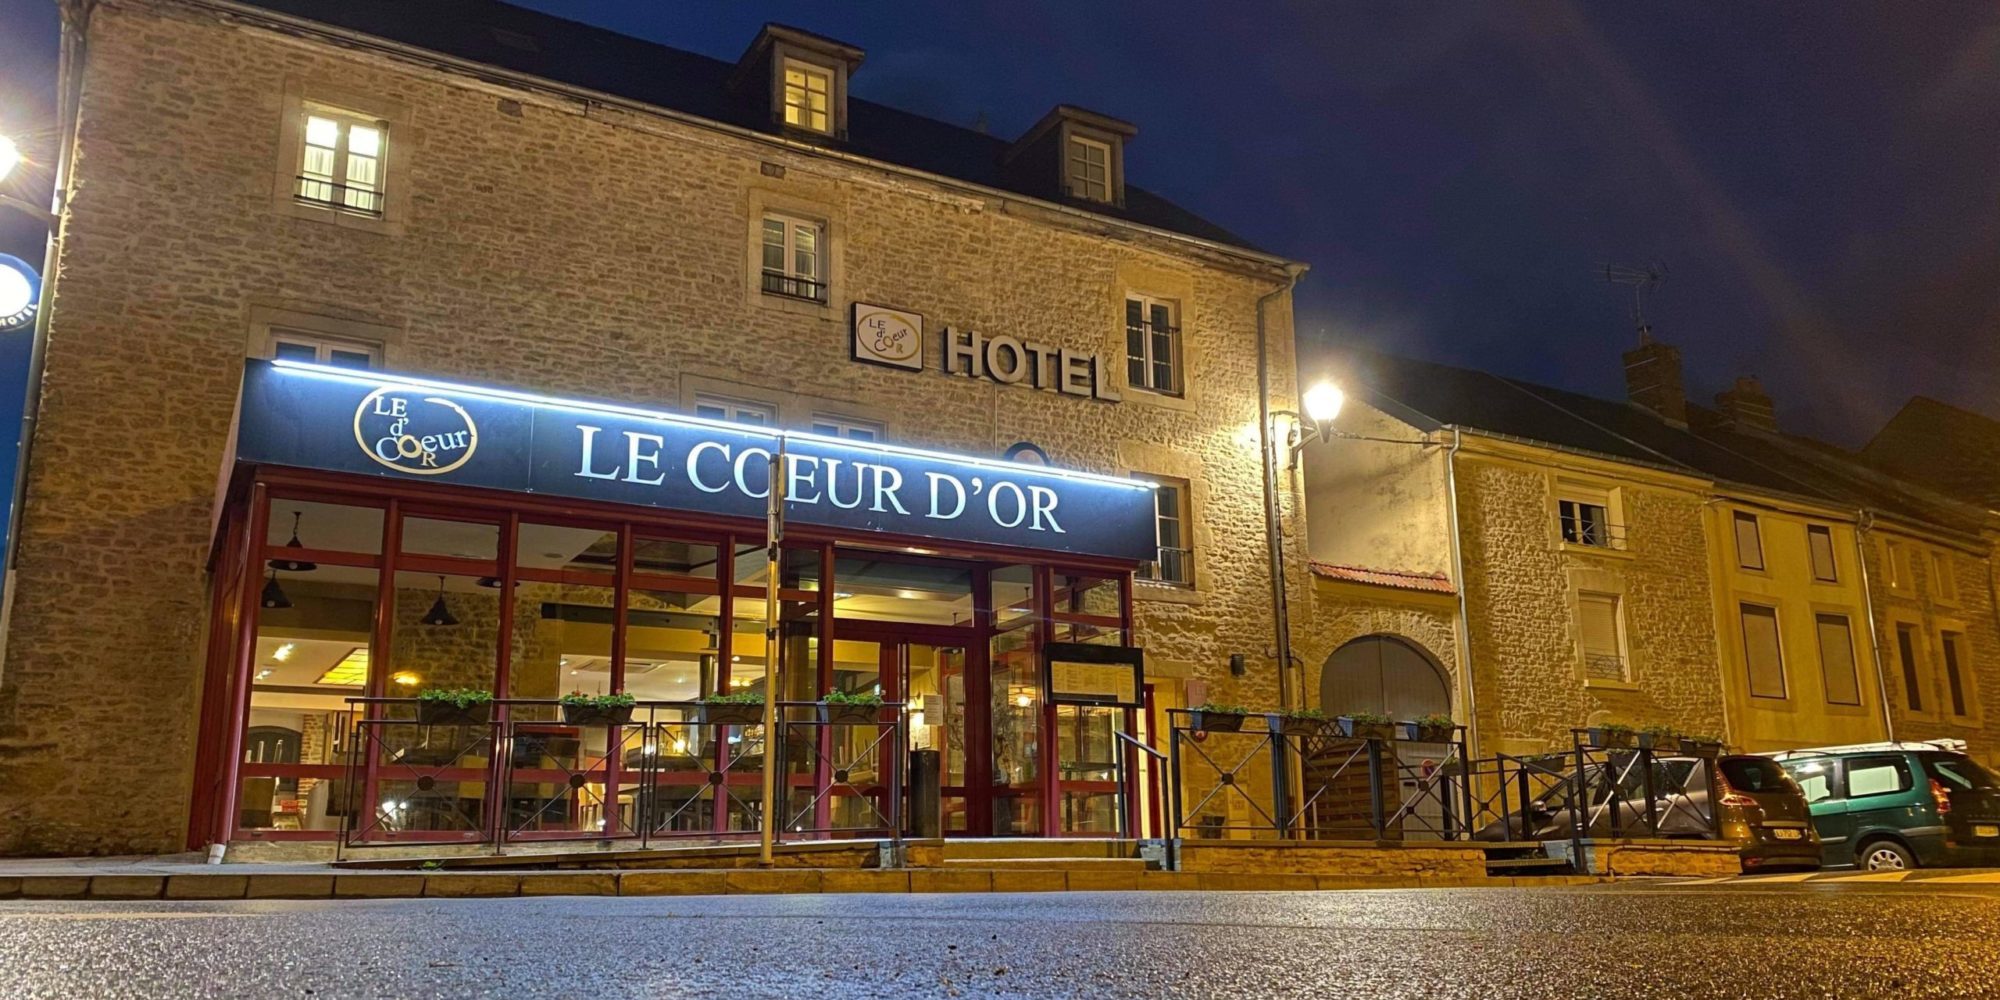 Hotel Restaurant Le Coeur d'Or - Douzy - Ardennes